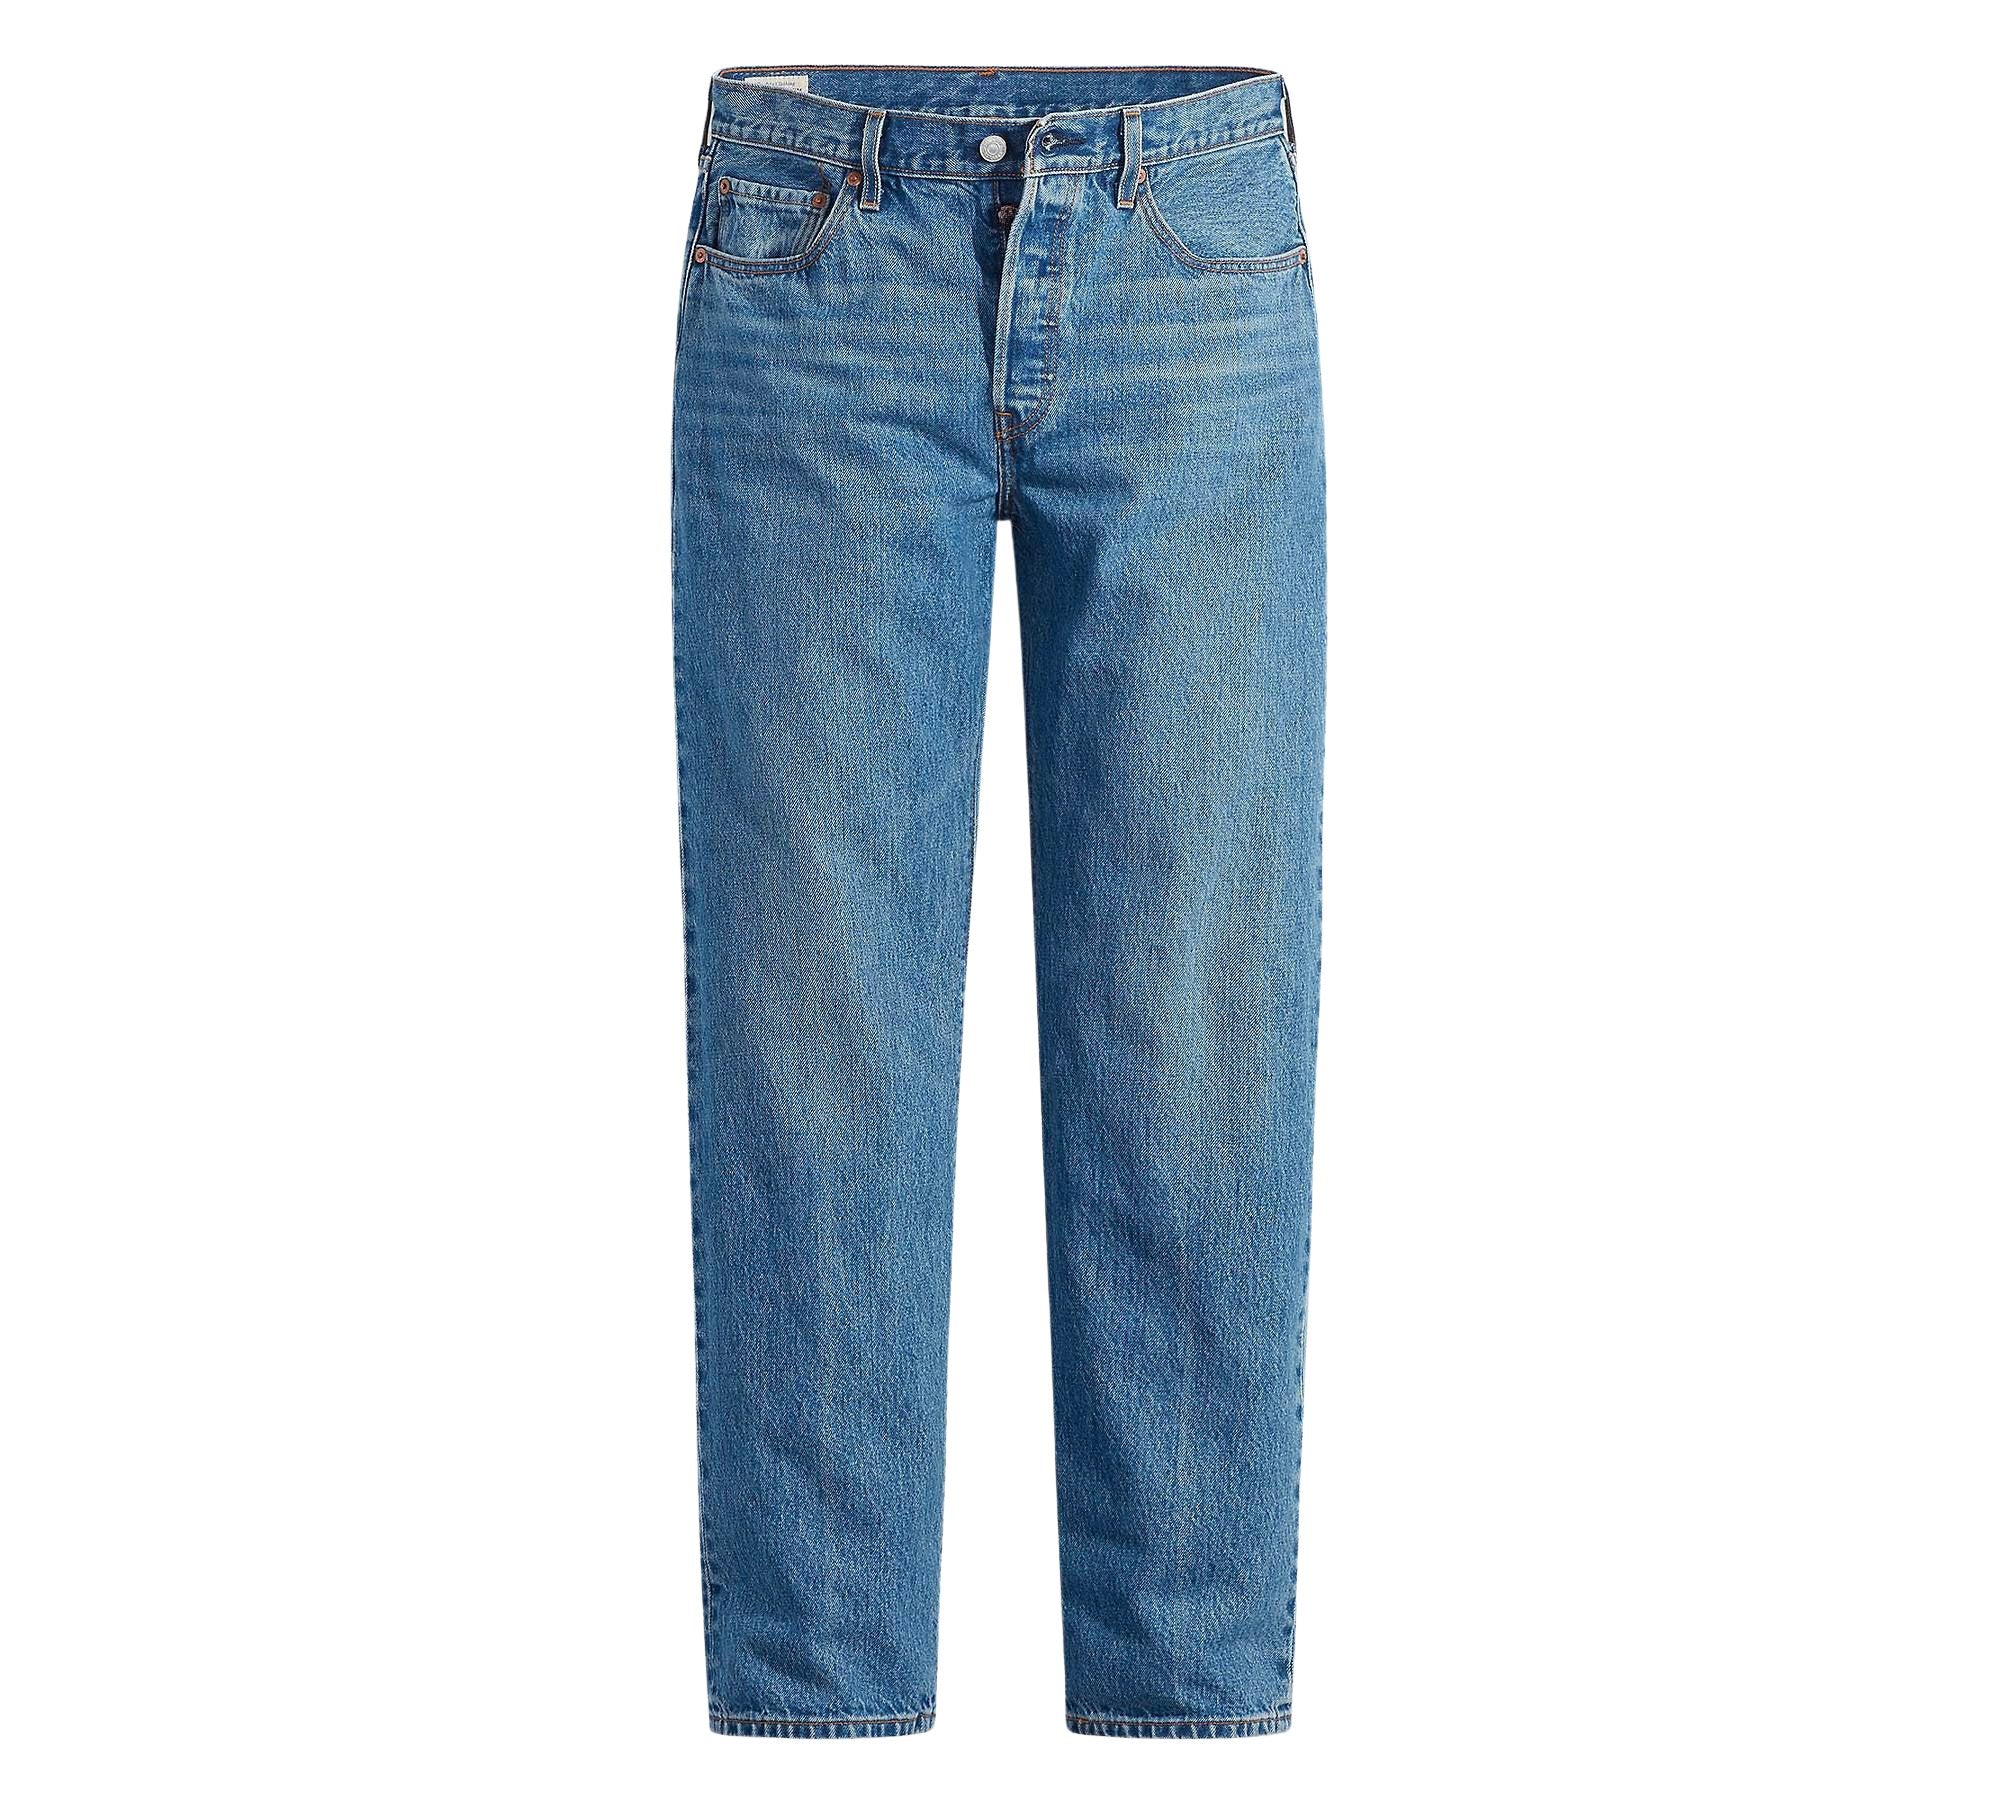 Vintage Levi's Classic Blue Jeans - Waist 34 - Length 30 - Vintage Superstore Online